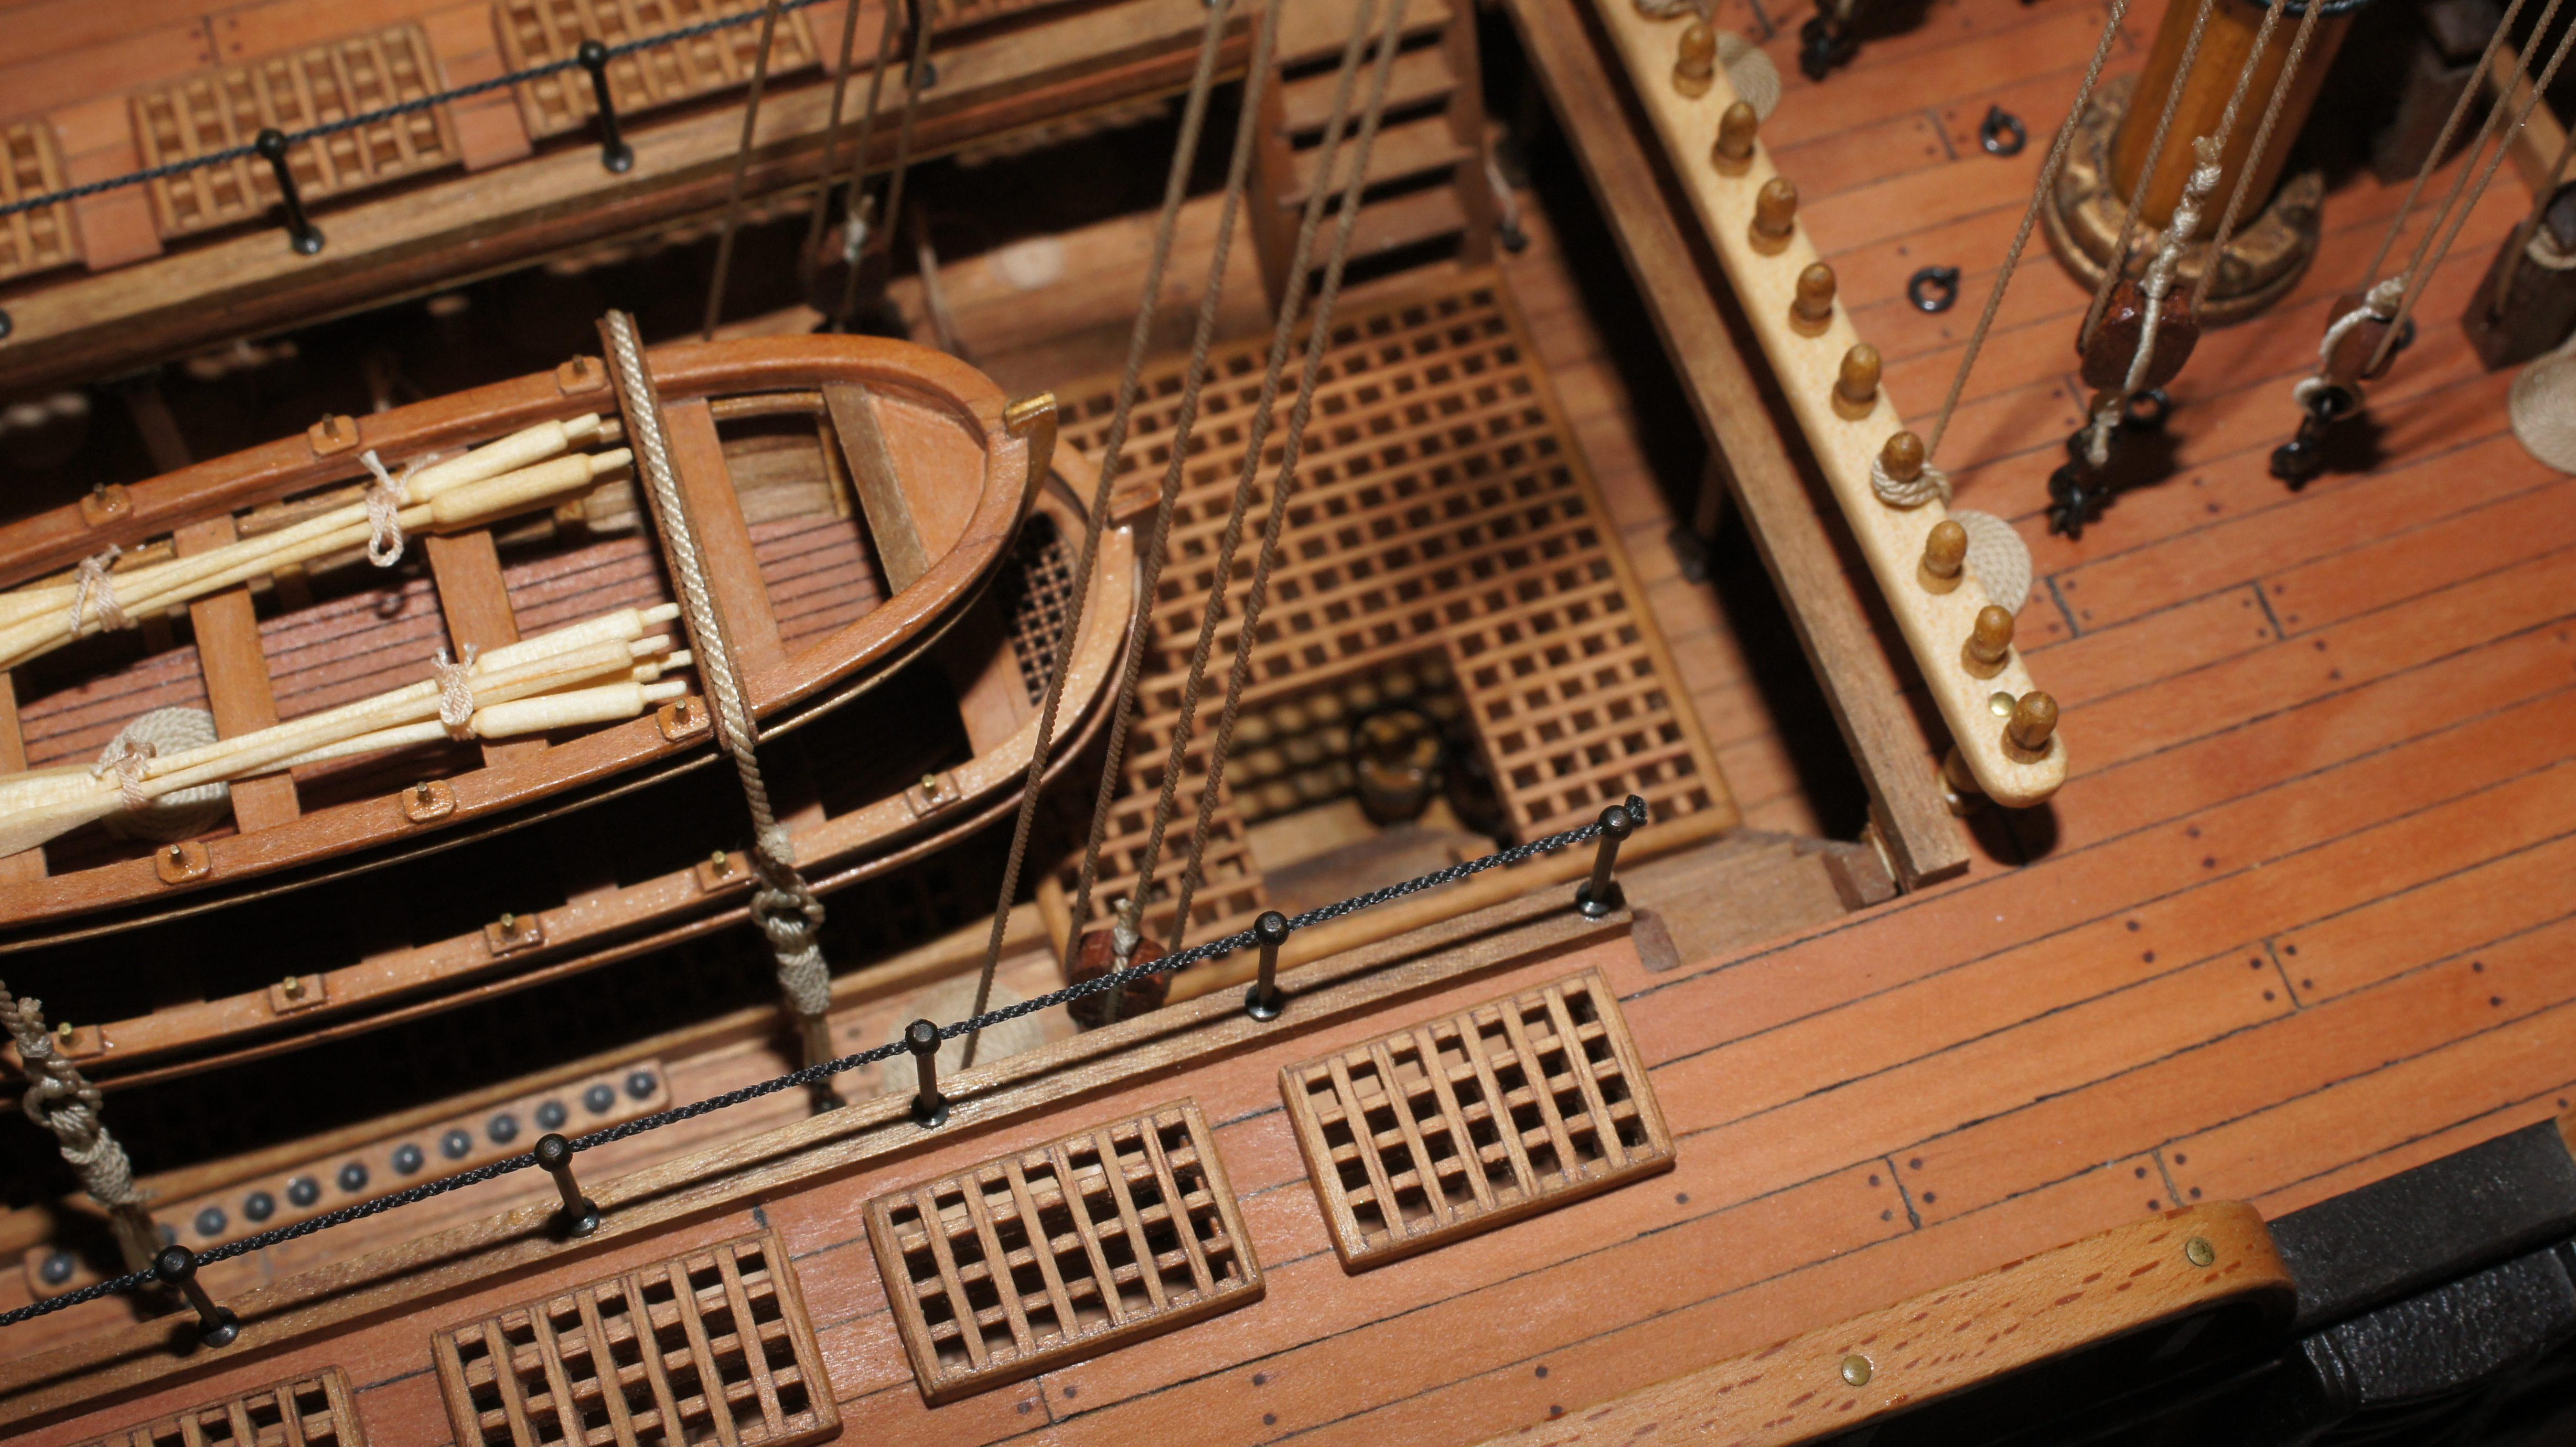 Палуба шлюпки. Двенадцать апостолов линейный корабль, 1841. HMS Victory 1765 каюта капитана. Модель корабля Sirene масштаб 1:75. HMS Victory 1765 внутри.